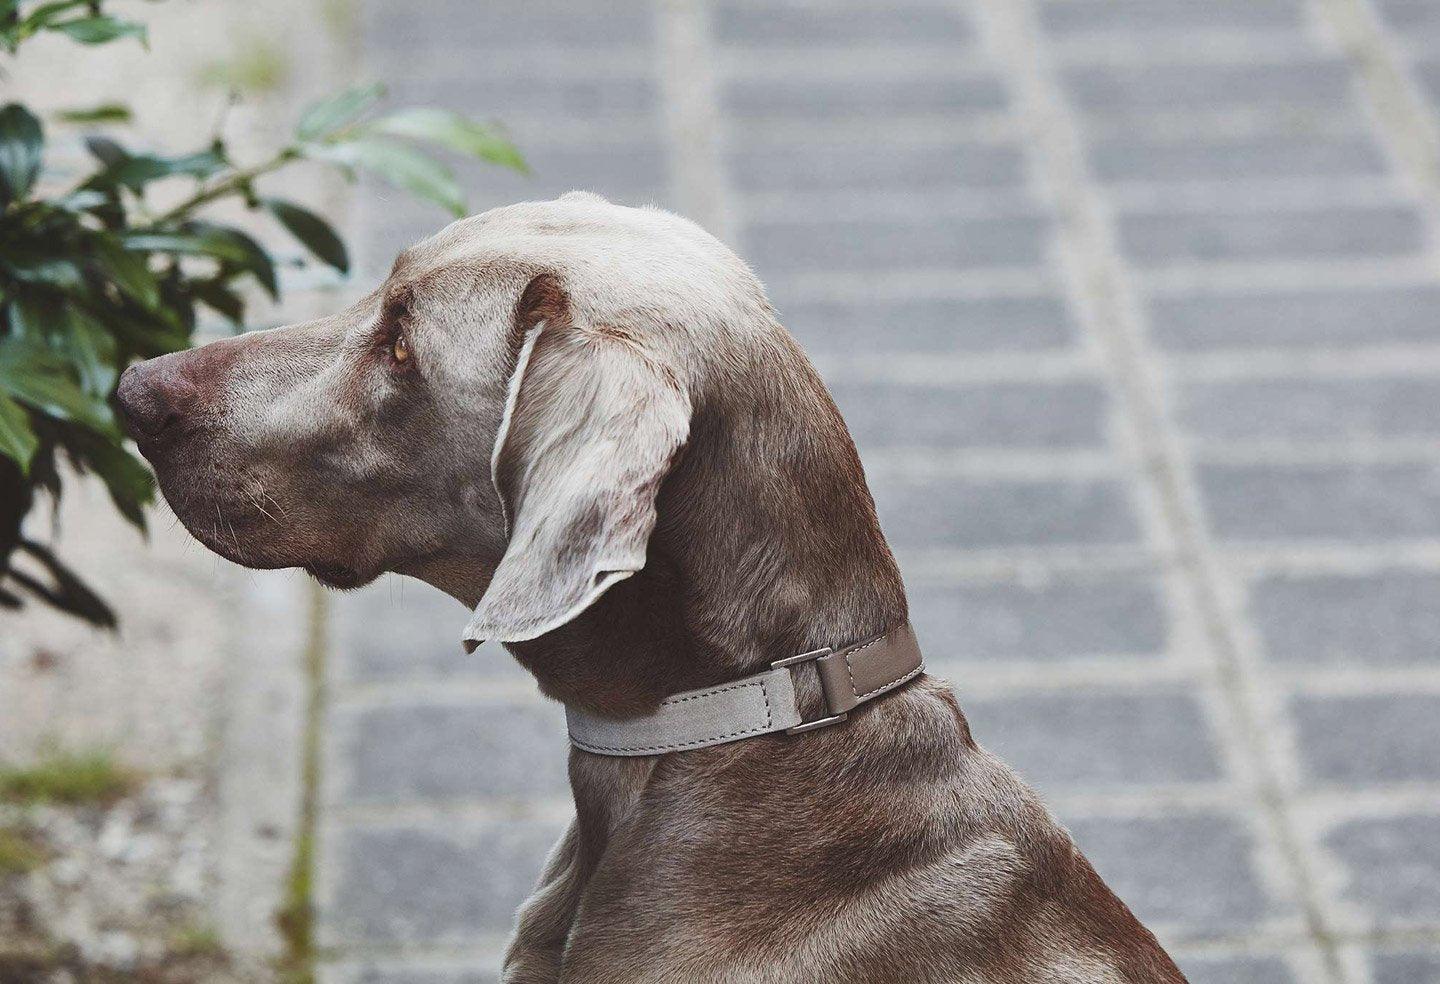 Large choix de colliers pour chiens de qualité, originaux et confortables - Kasibe